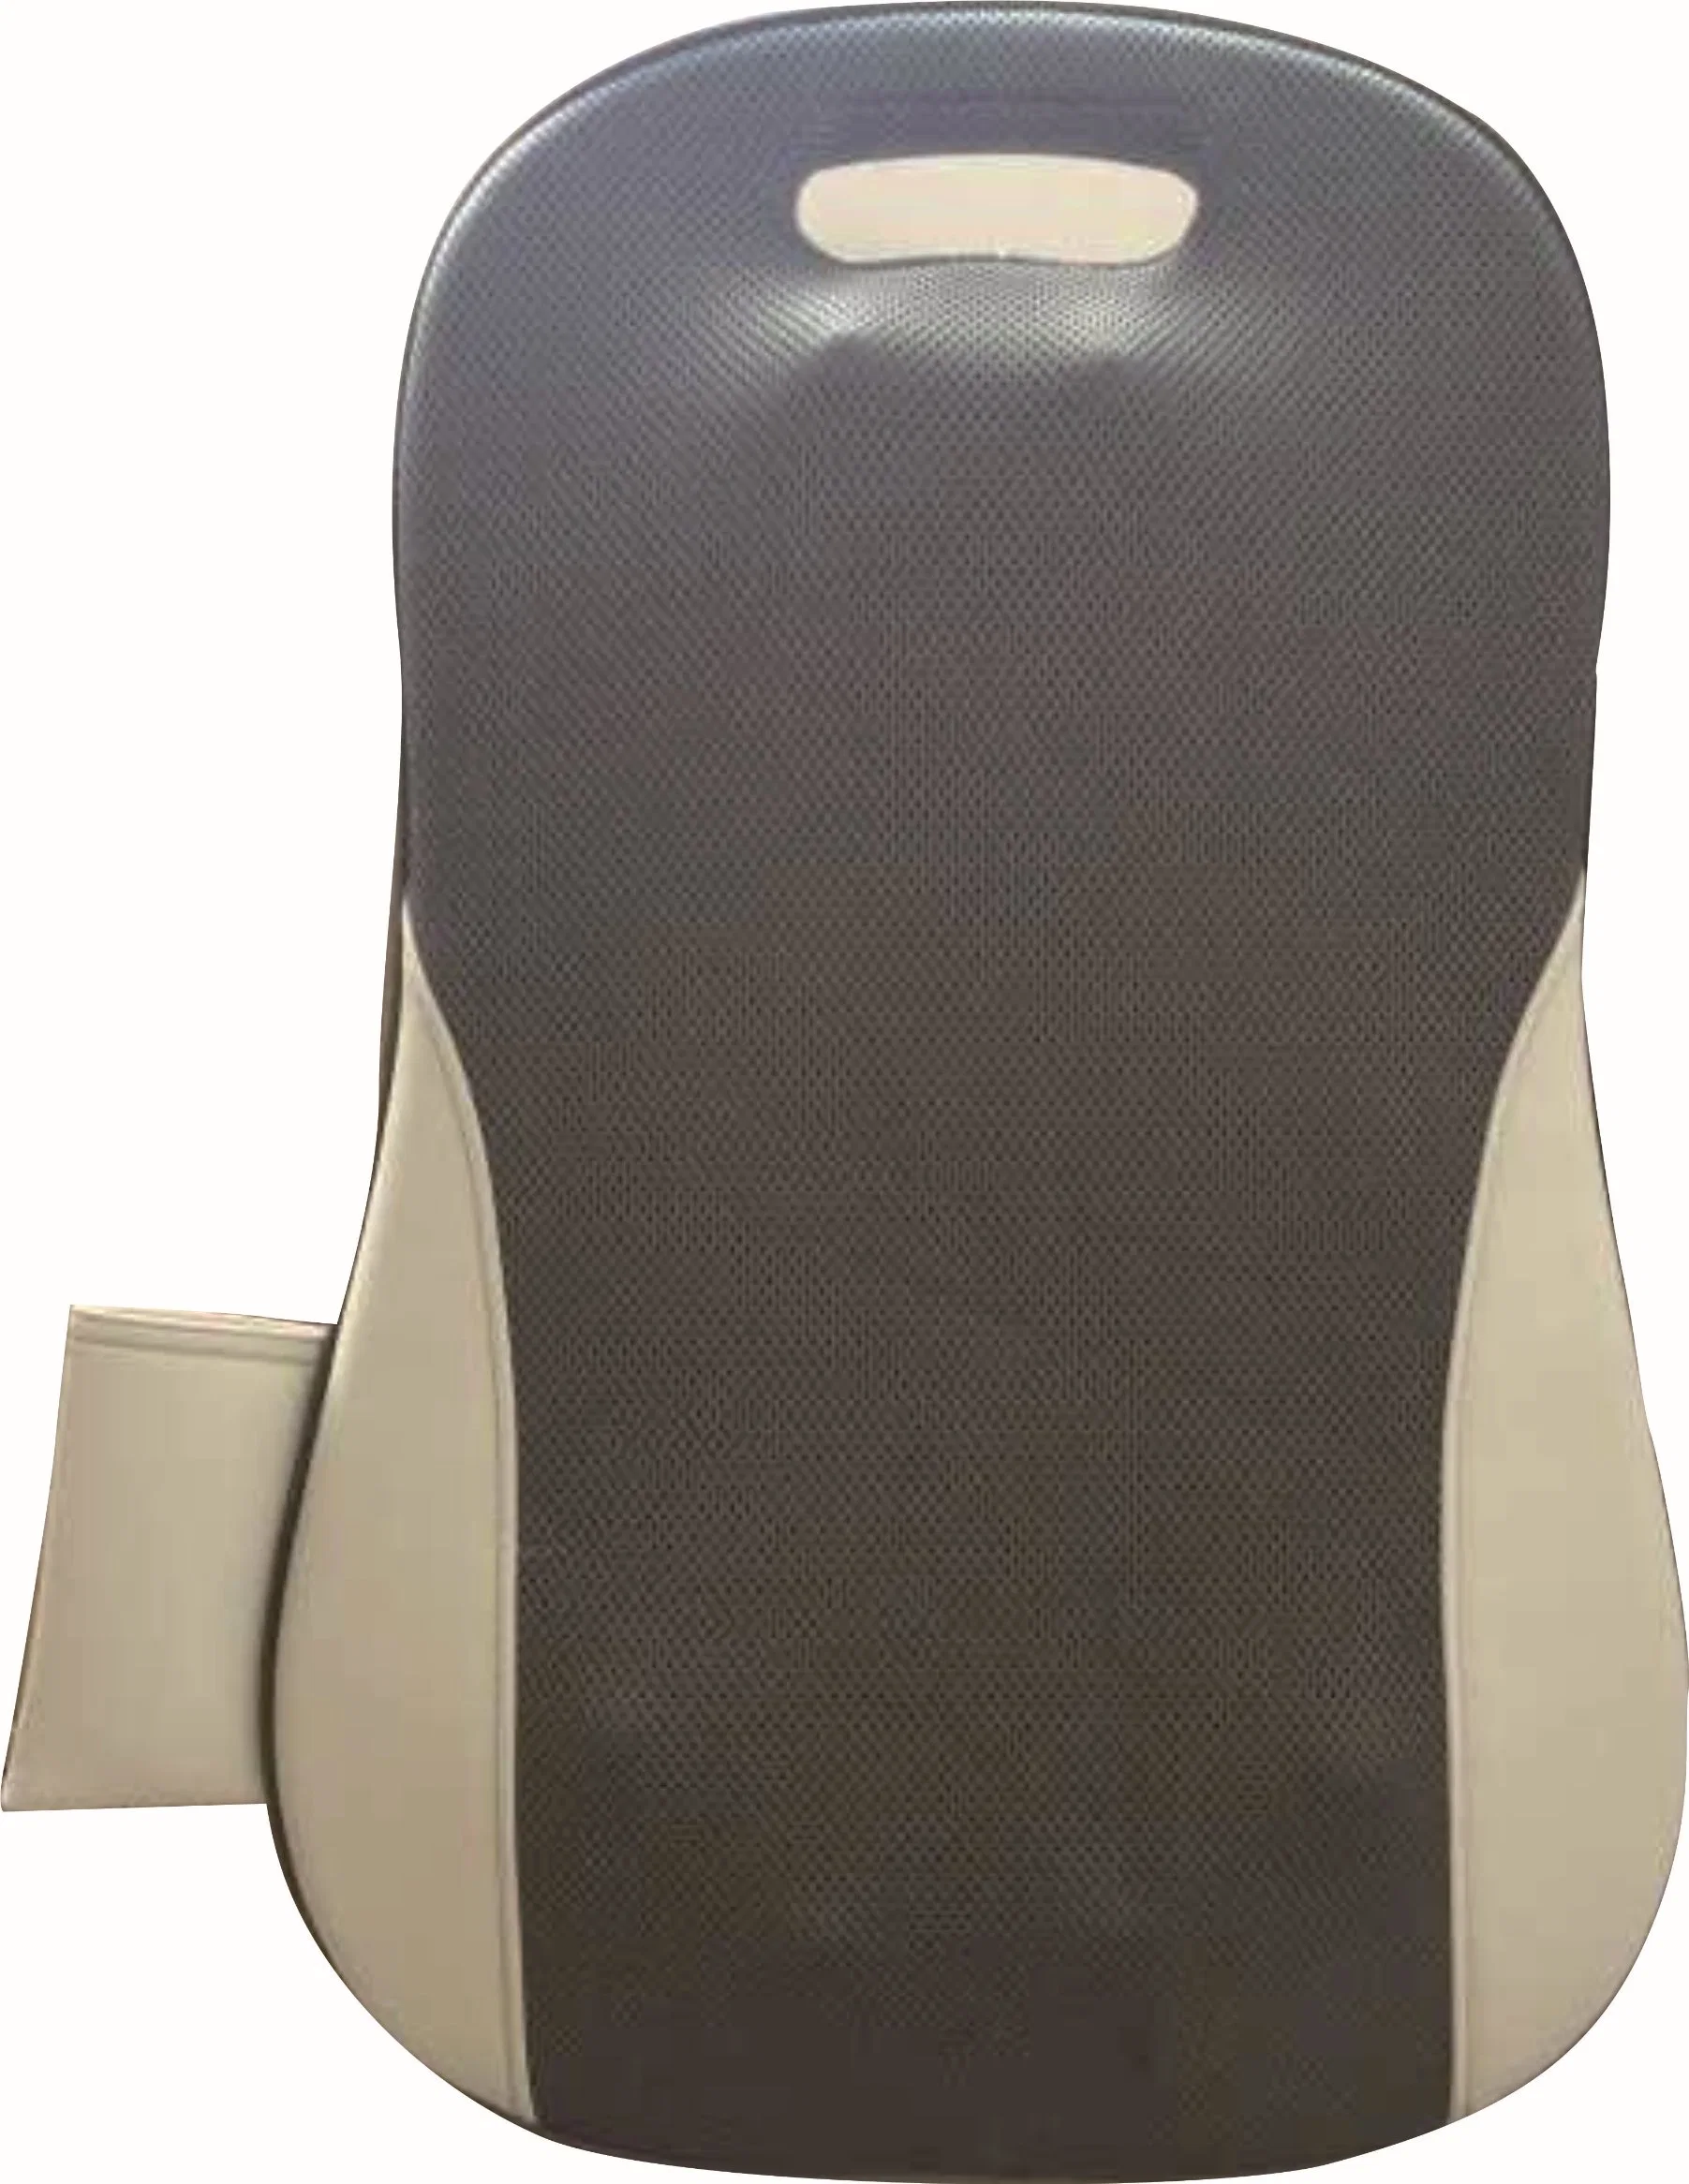 Управление электрический стул шиатсу насадки для теста с поясом на резинке сзади поддержки портативных массажная подушечка крюк массажер с пульта дистанционного управления